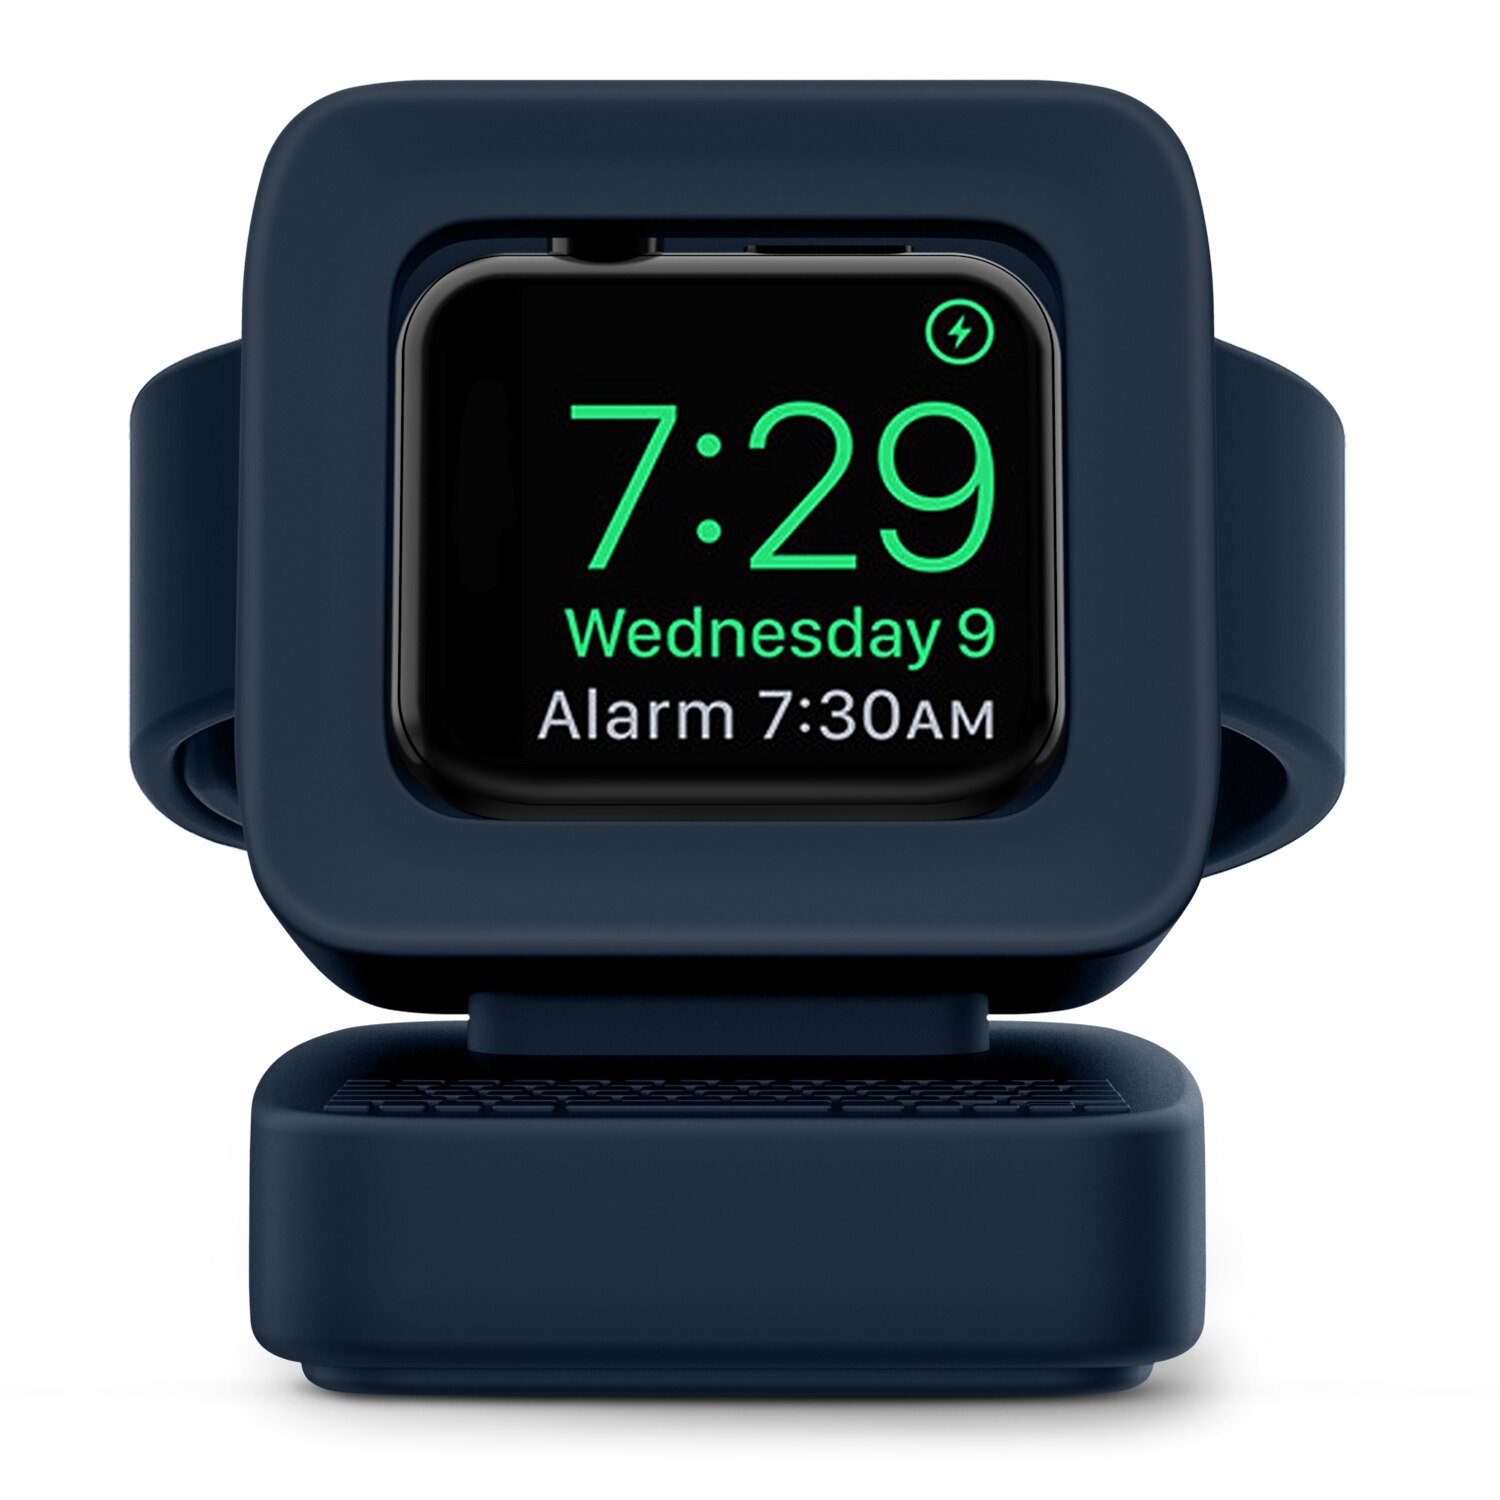 Mapuce oplader stativmonteret silikone dock holder til apple watch serie 3/2/1 opladerkabel til apple iwatch serie 42mm/38mm: Midnatblåt